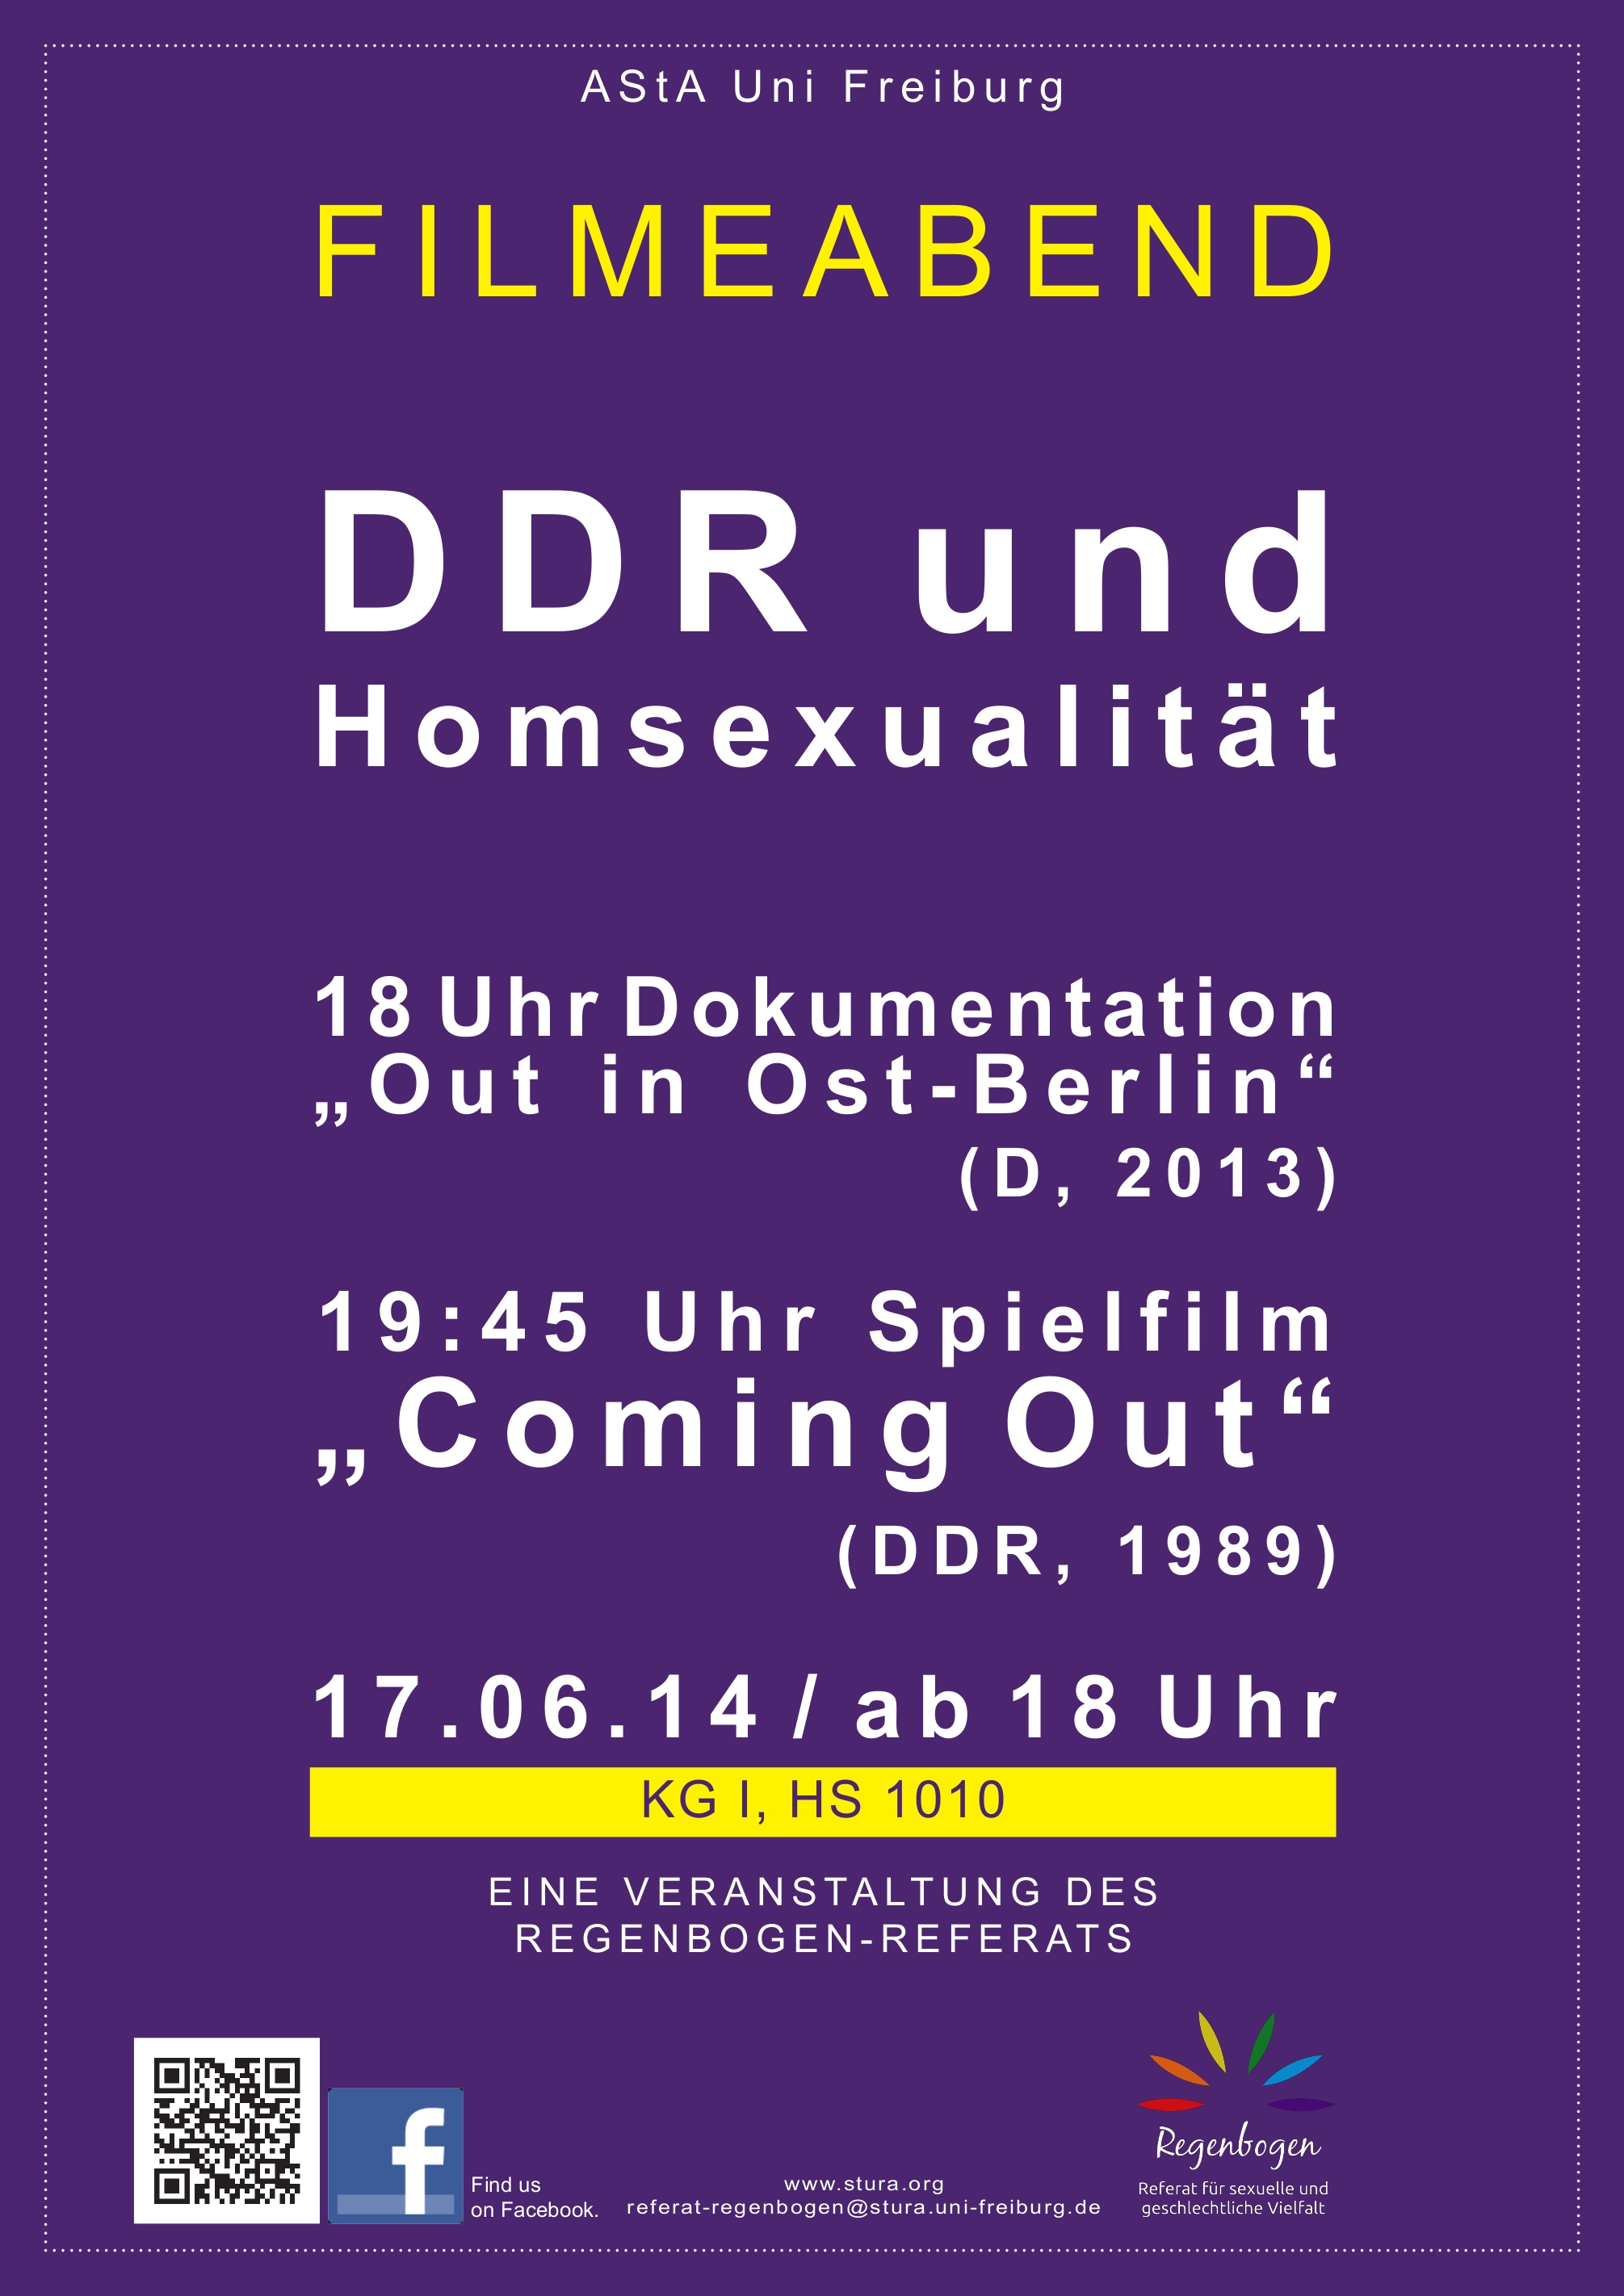 Plakat Filmeabend DDR und Homosexualität